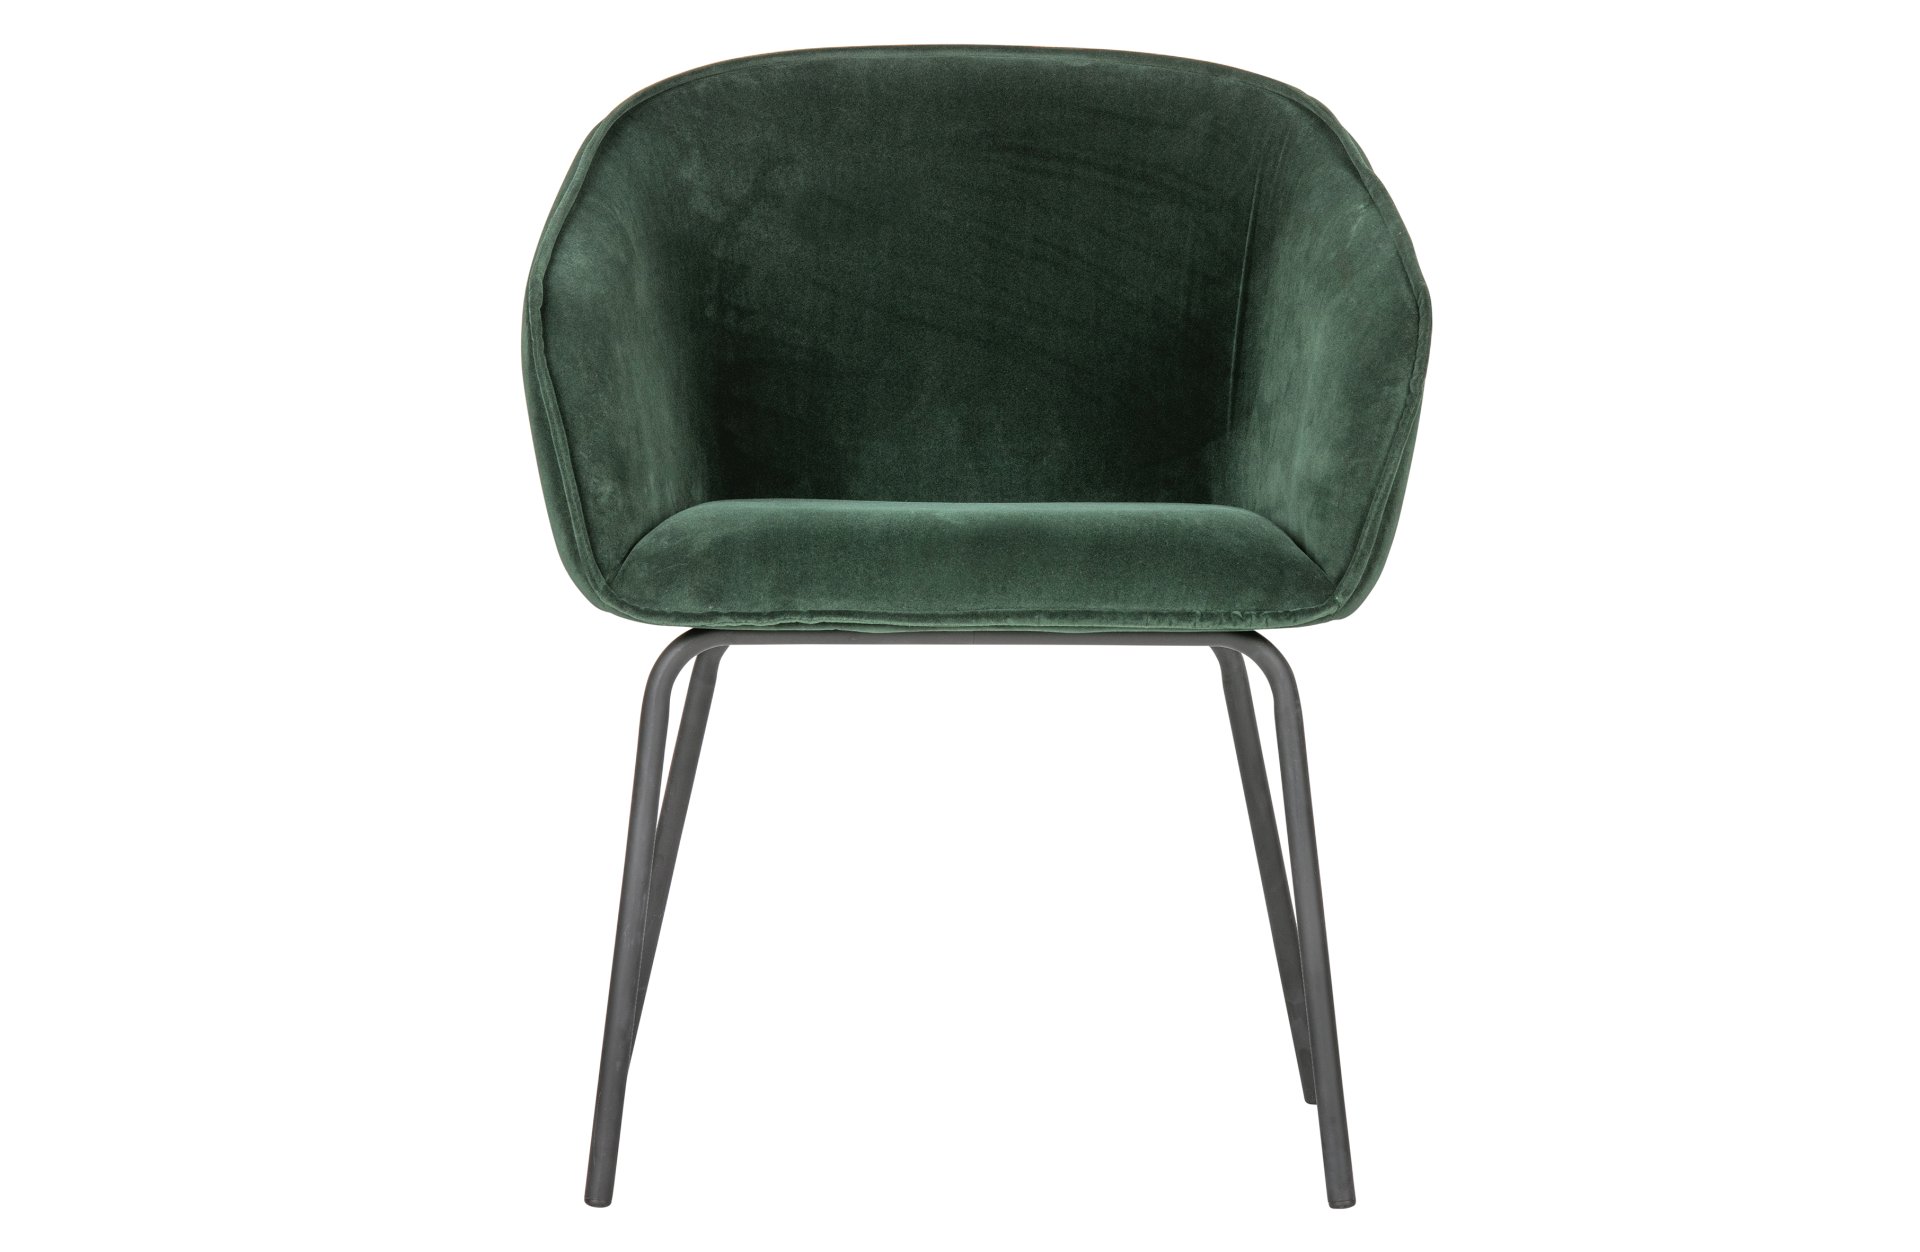 Der Esszimmerstuhl Sien wurde mit einem Samt Bezug bezogen. Er ist immer als 2er-Set erhältlich. Der Stuhl ist in zwei Varianten verfügbar, dieser besitzt die Farbe Grün.